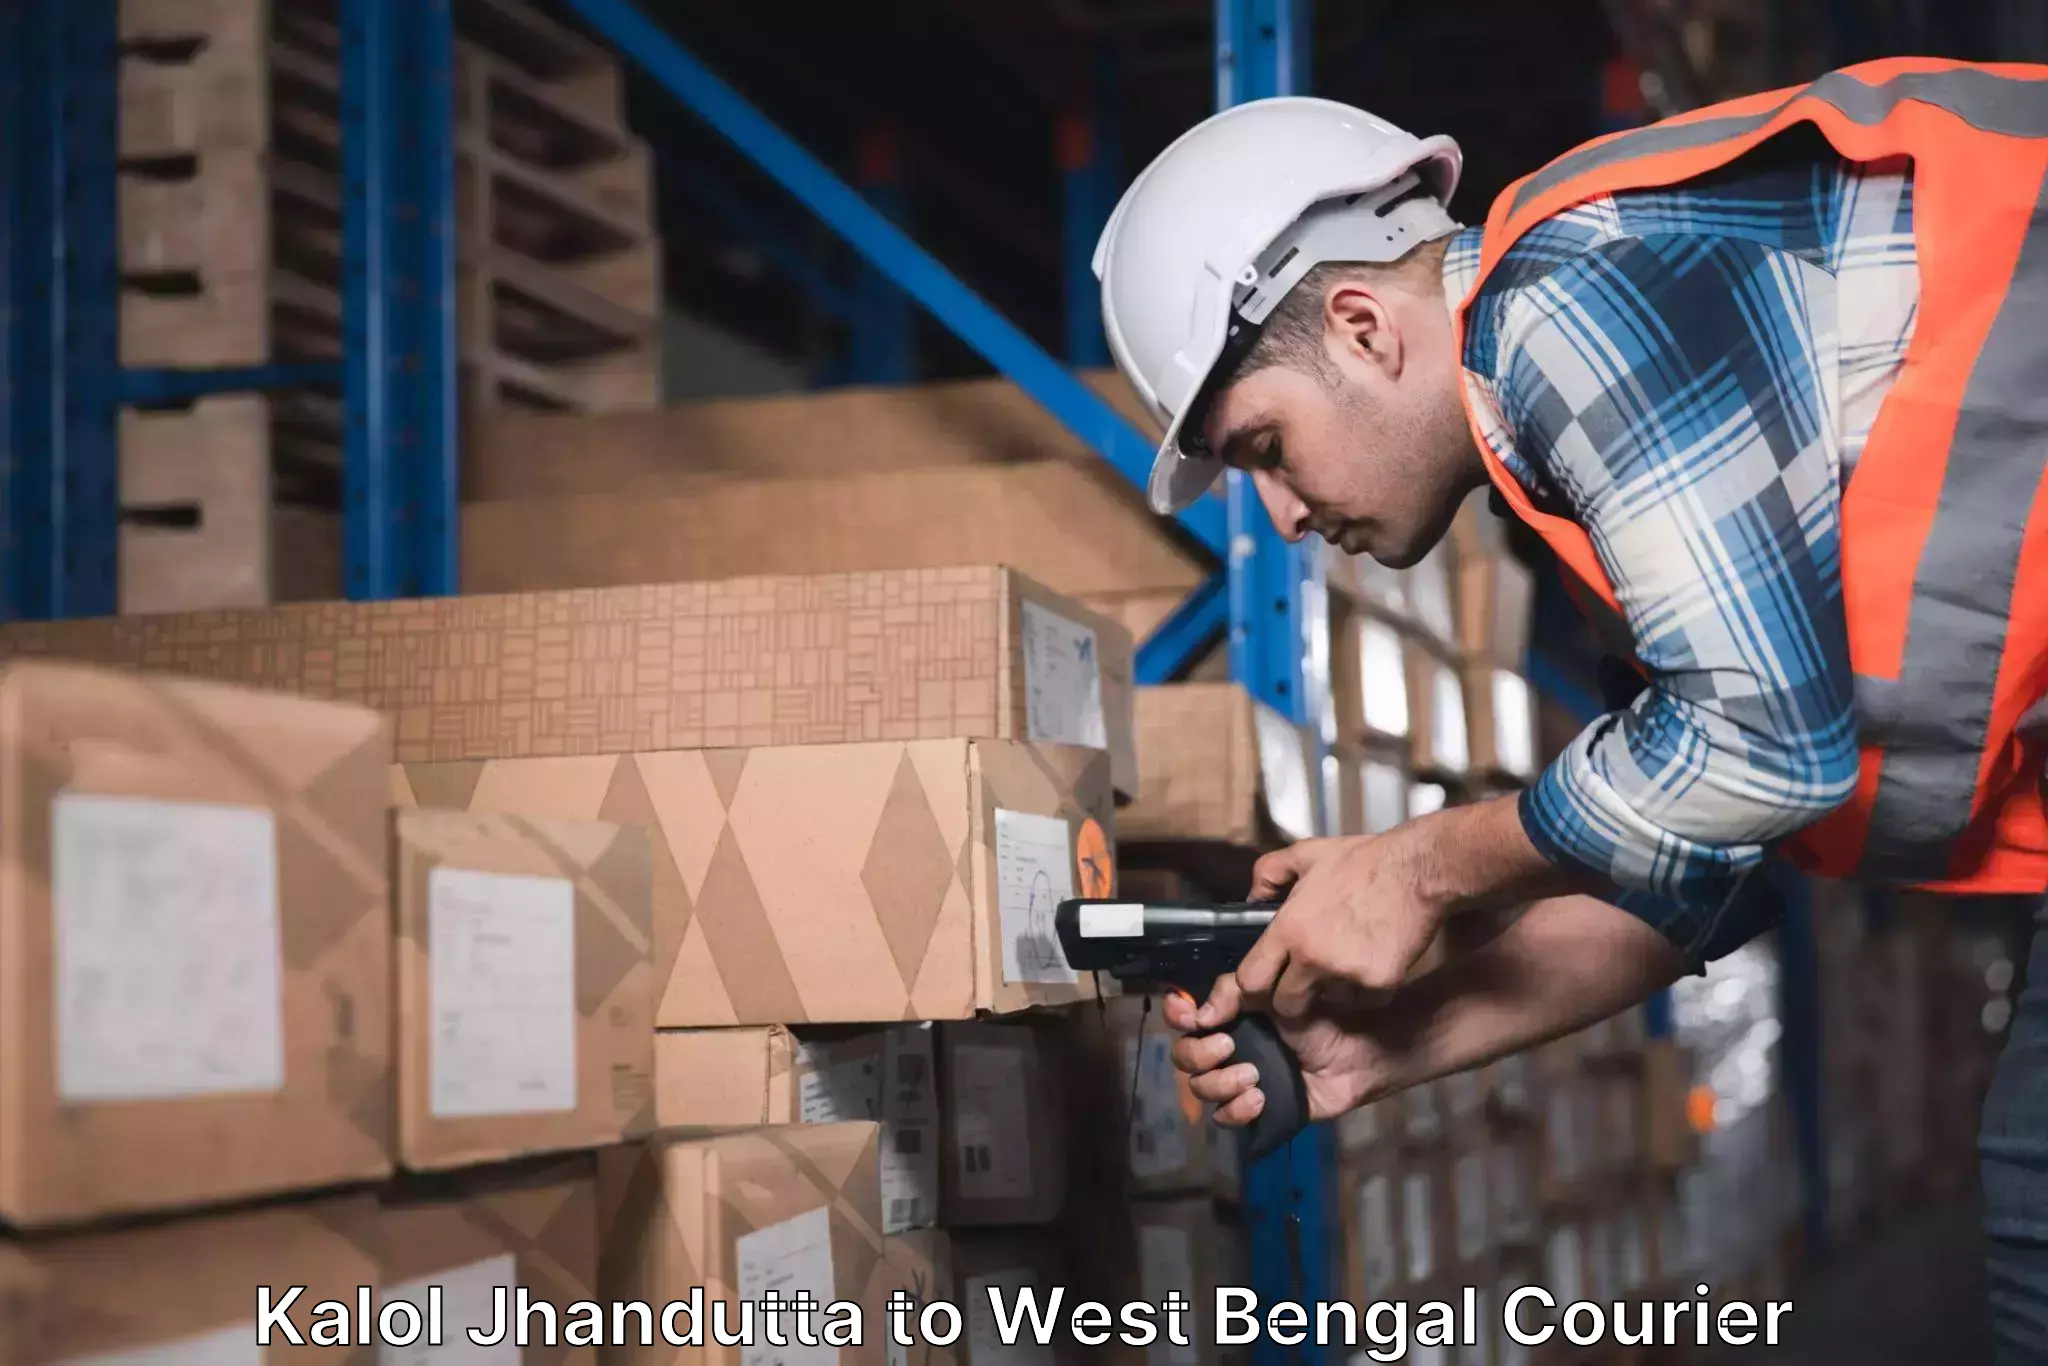 Integrated courier services Kalol Jhandutta to Kolkata Port